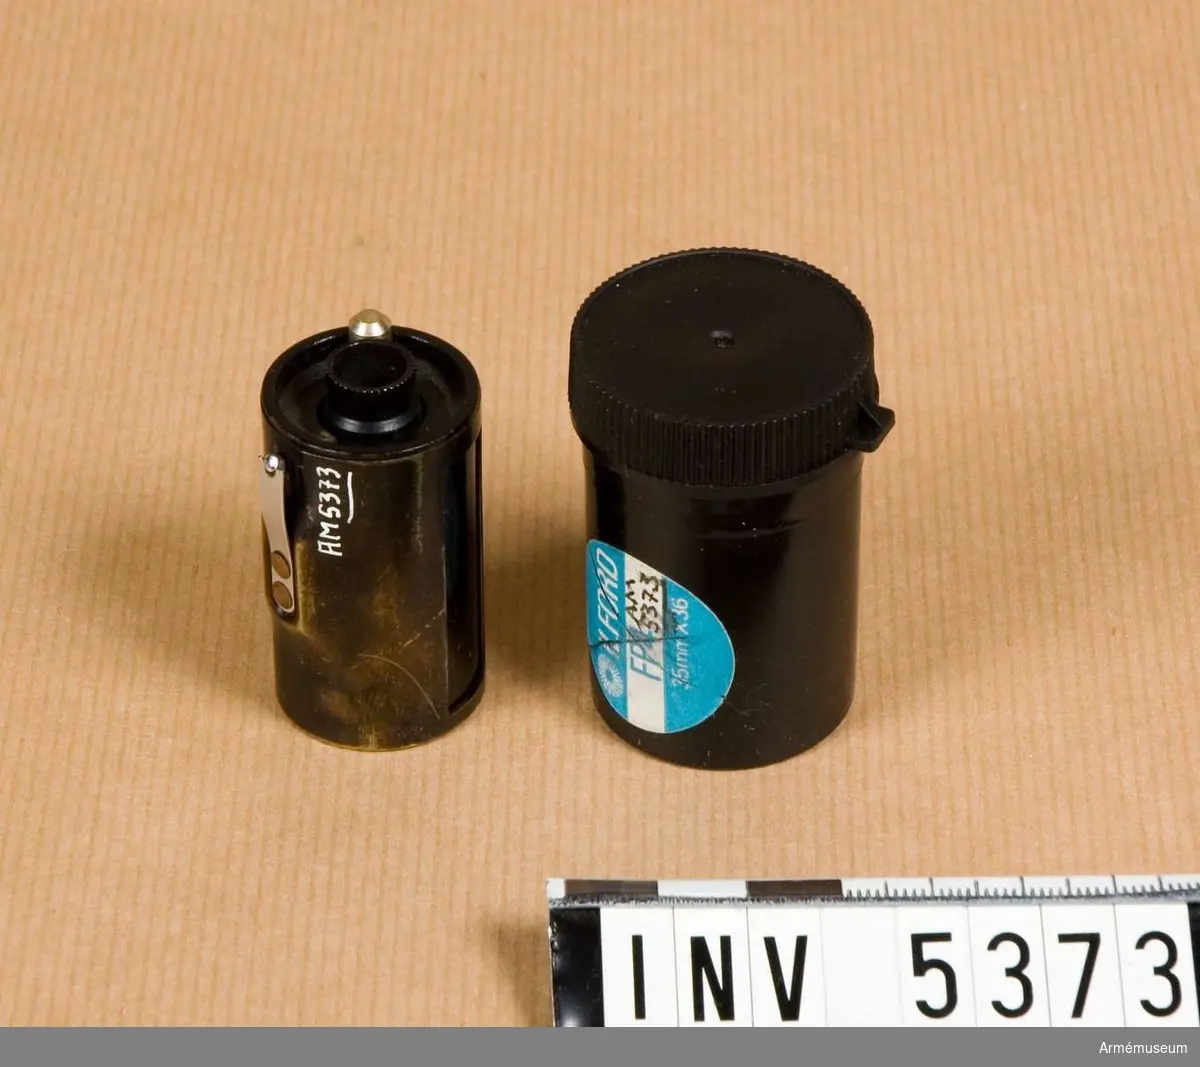 Rullfilmskassett, Leitz. M 7022-210.Kassetten består av en mantel som är dubbel och en spole.  Mörkt brun, en fjäder i krom är skadad. Spolen i svart är troligen av aluminium.Används för 35 mm småbildsfilm som laddas i mörkrum.